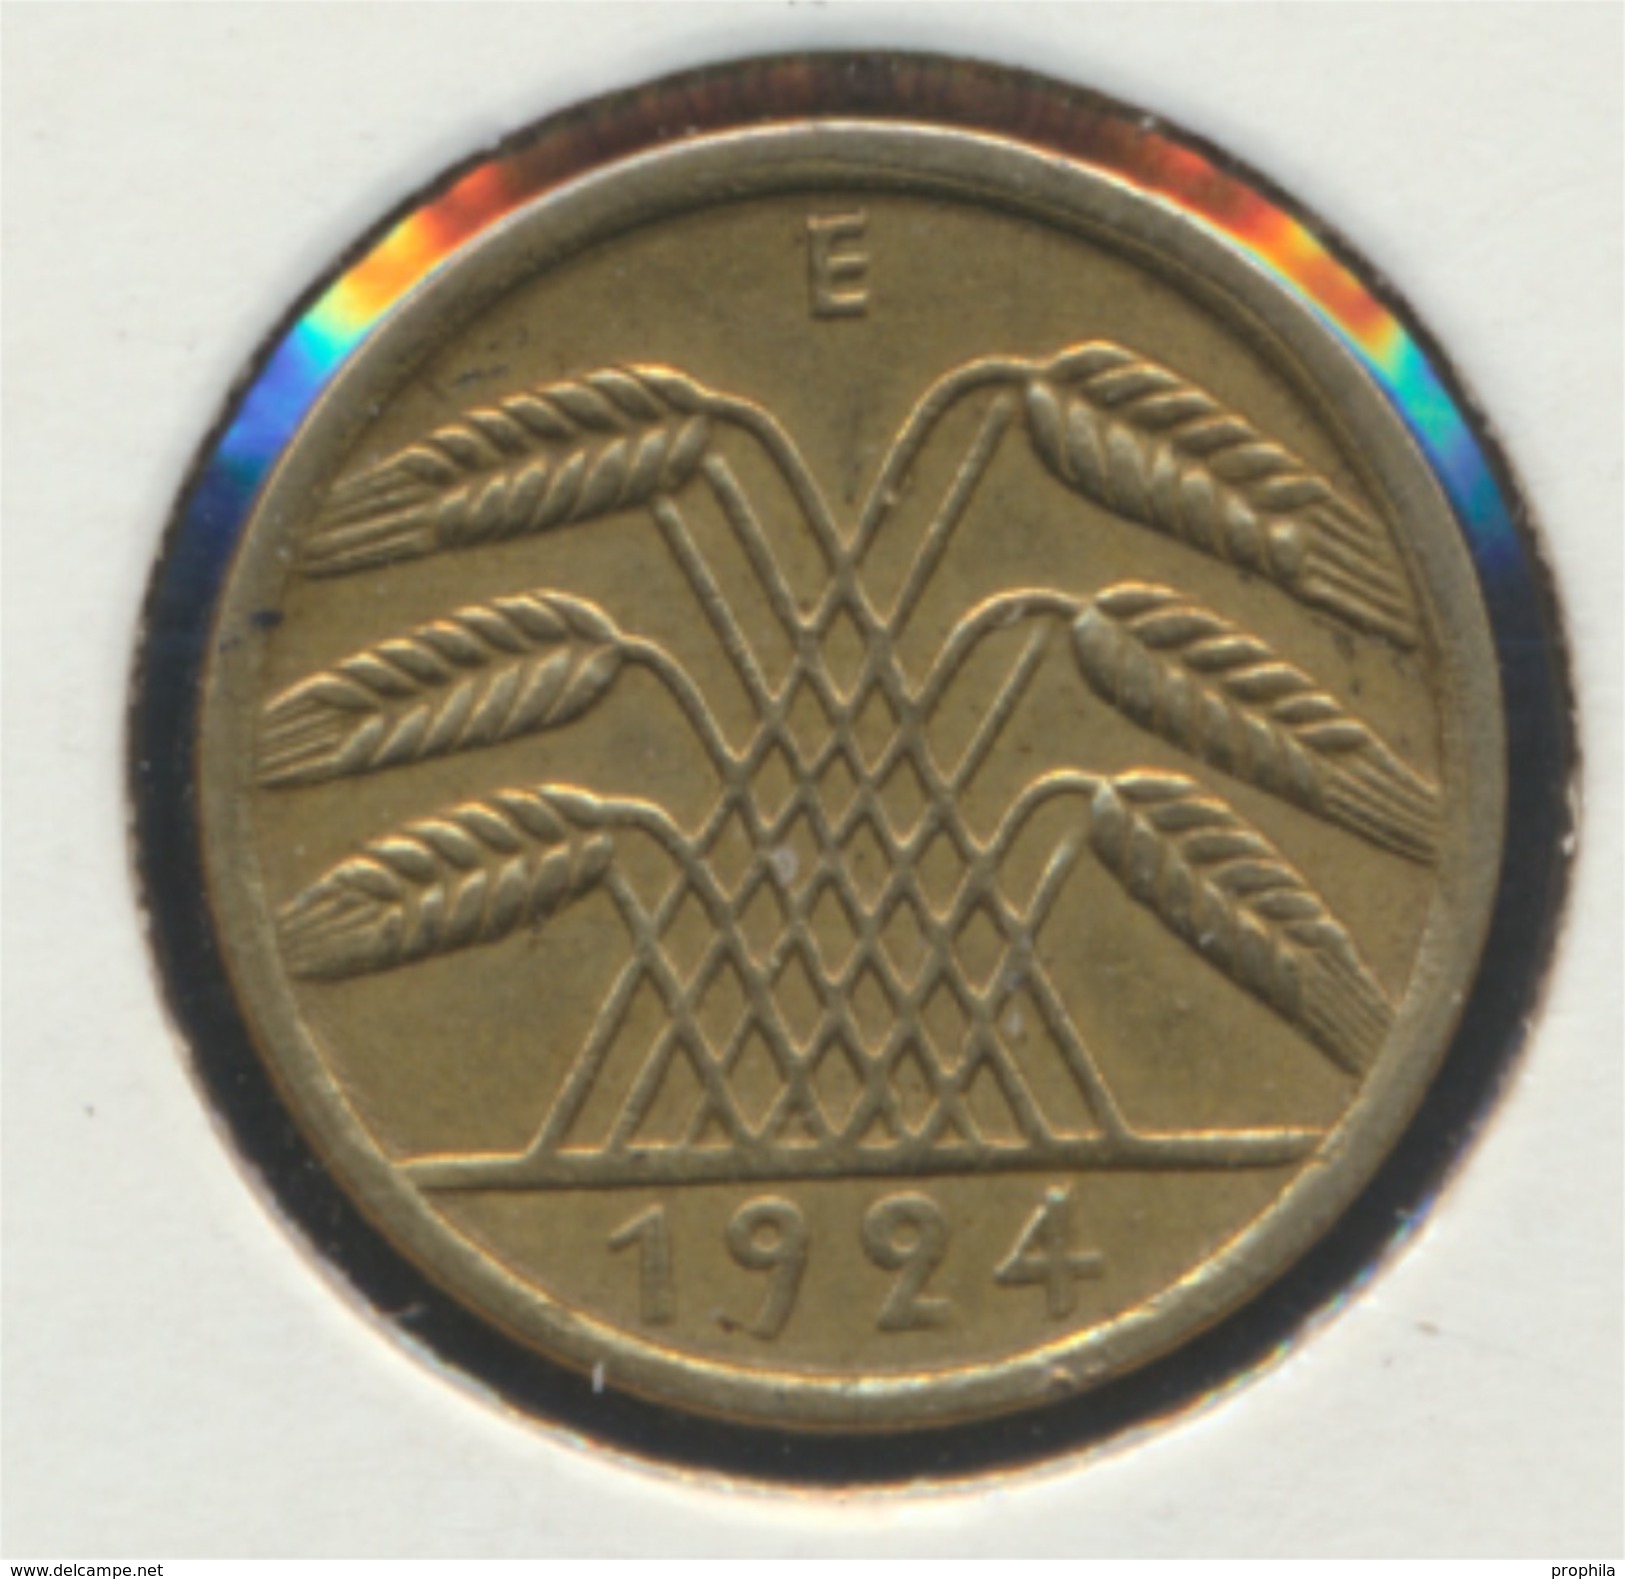 Deutsches Reich Jägernr: 308 1924 E Vorzüglich Aluminium-Bronze 1924 5 Rentenpfennig Ähren (7869107 - 5 Rentenpfennig & 5 Reichspfennig